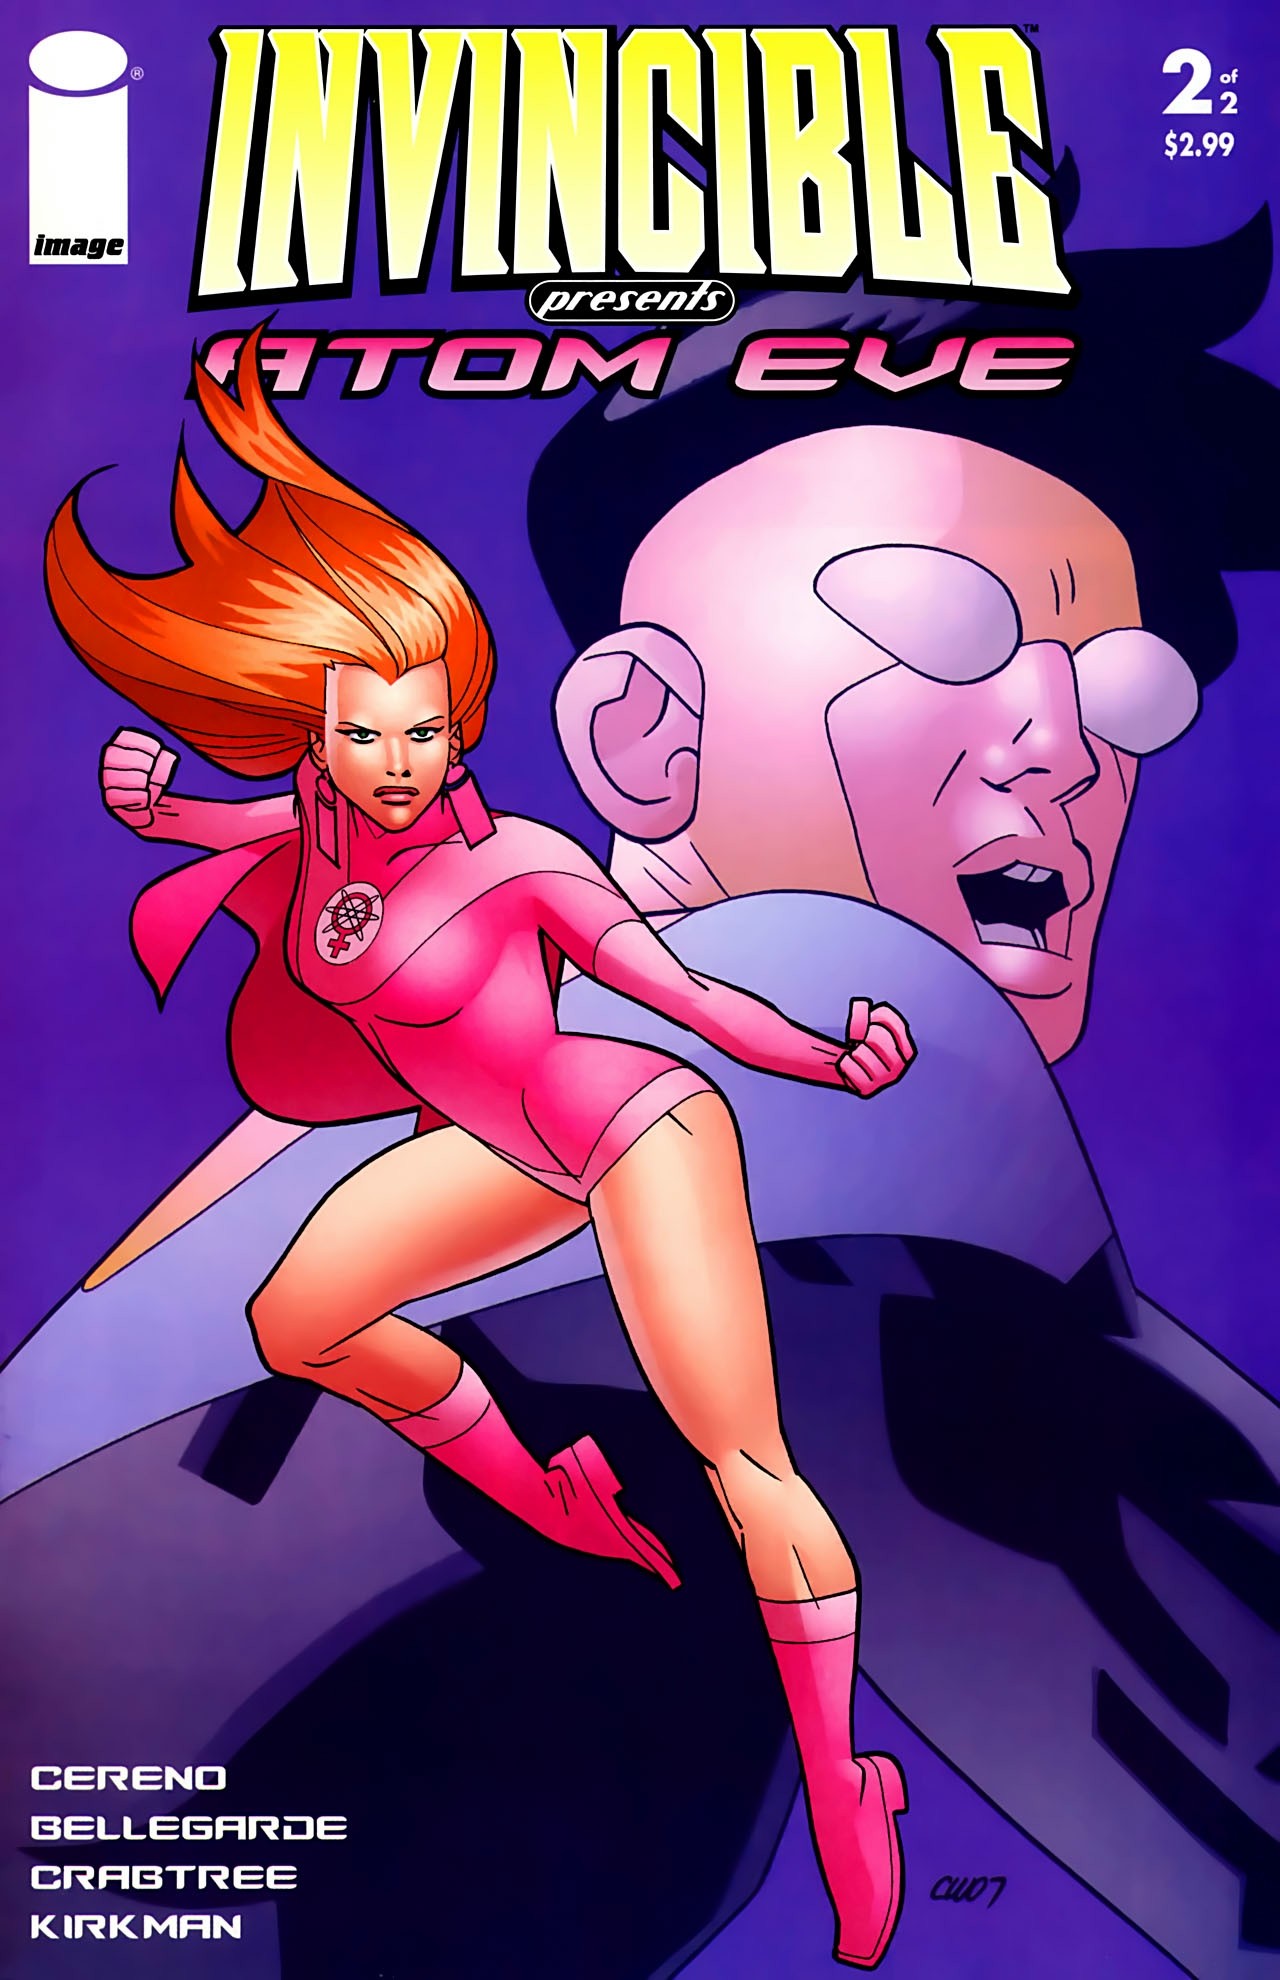 Invincible Presents: Atom Eve Vol. 1 #2